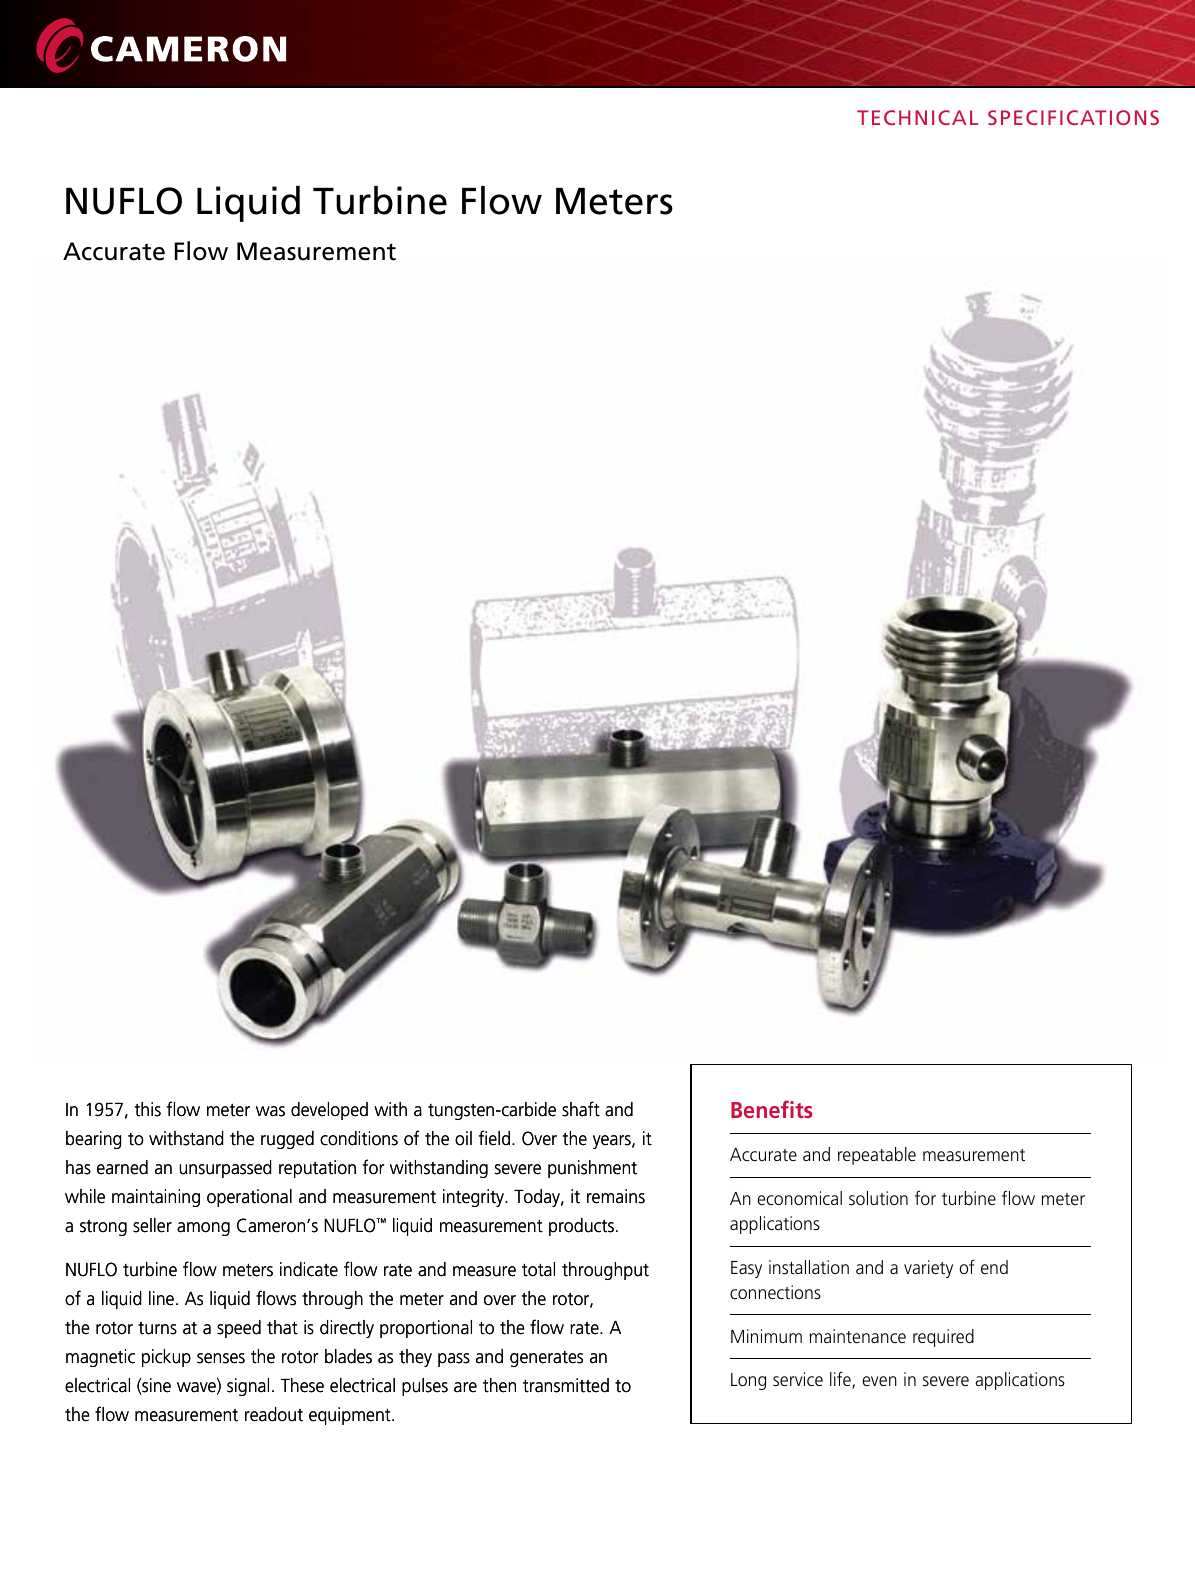 Page 1 of 8 - NUFLO Liquid Turbine Flowmeters Data Sheet Nuflo-liquid-turbine-flow-meters